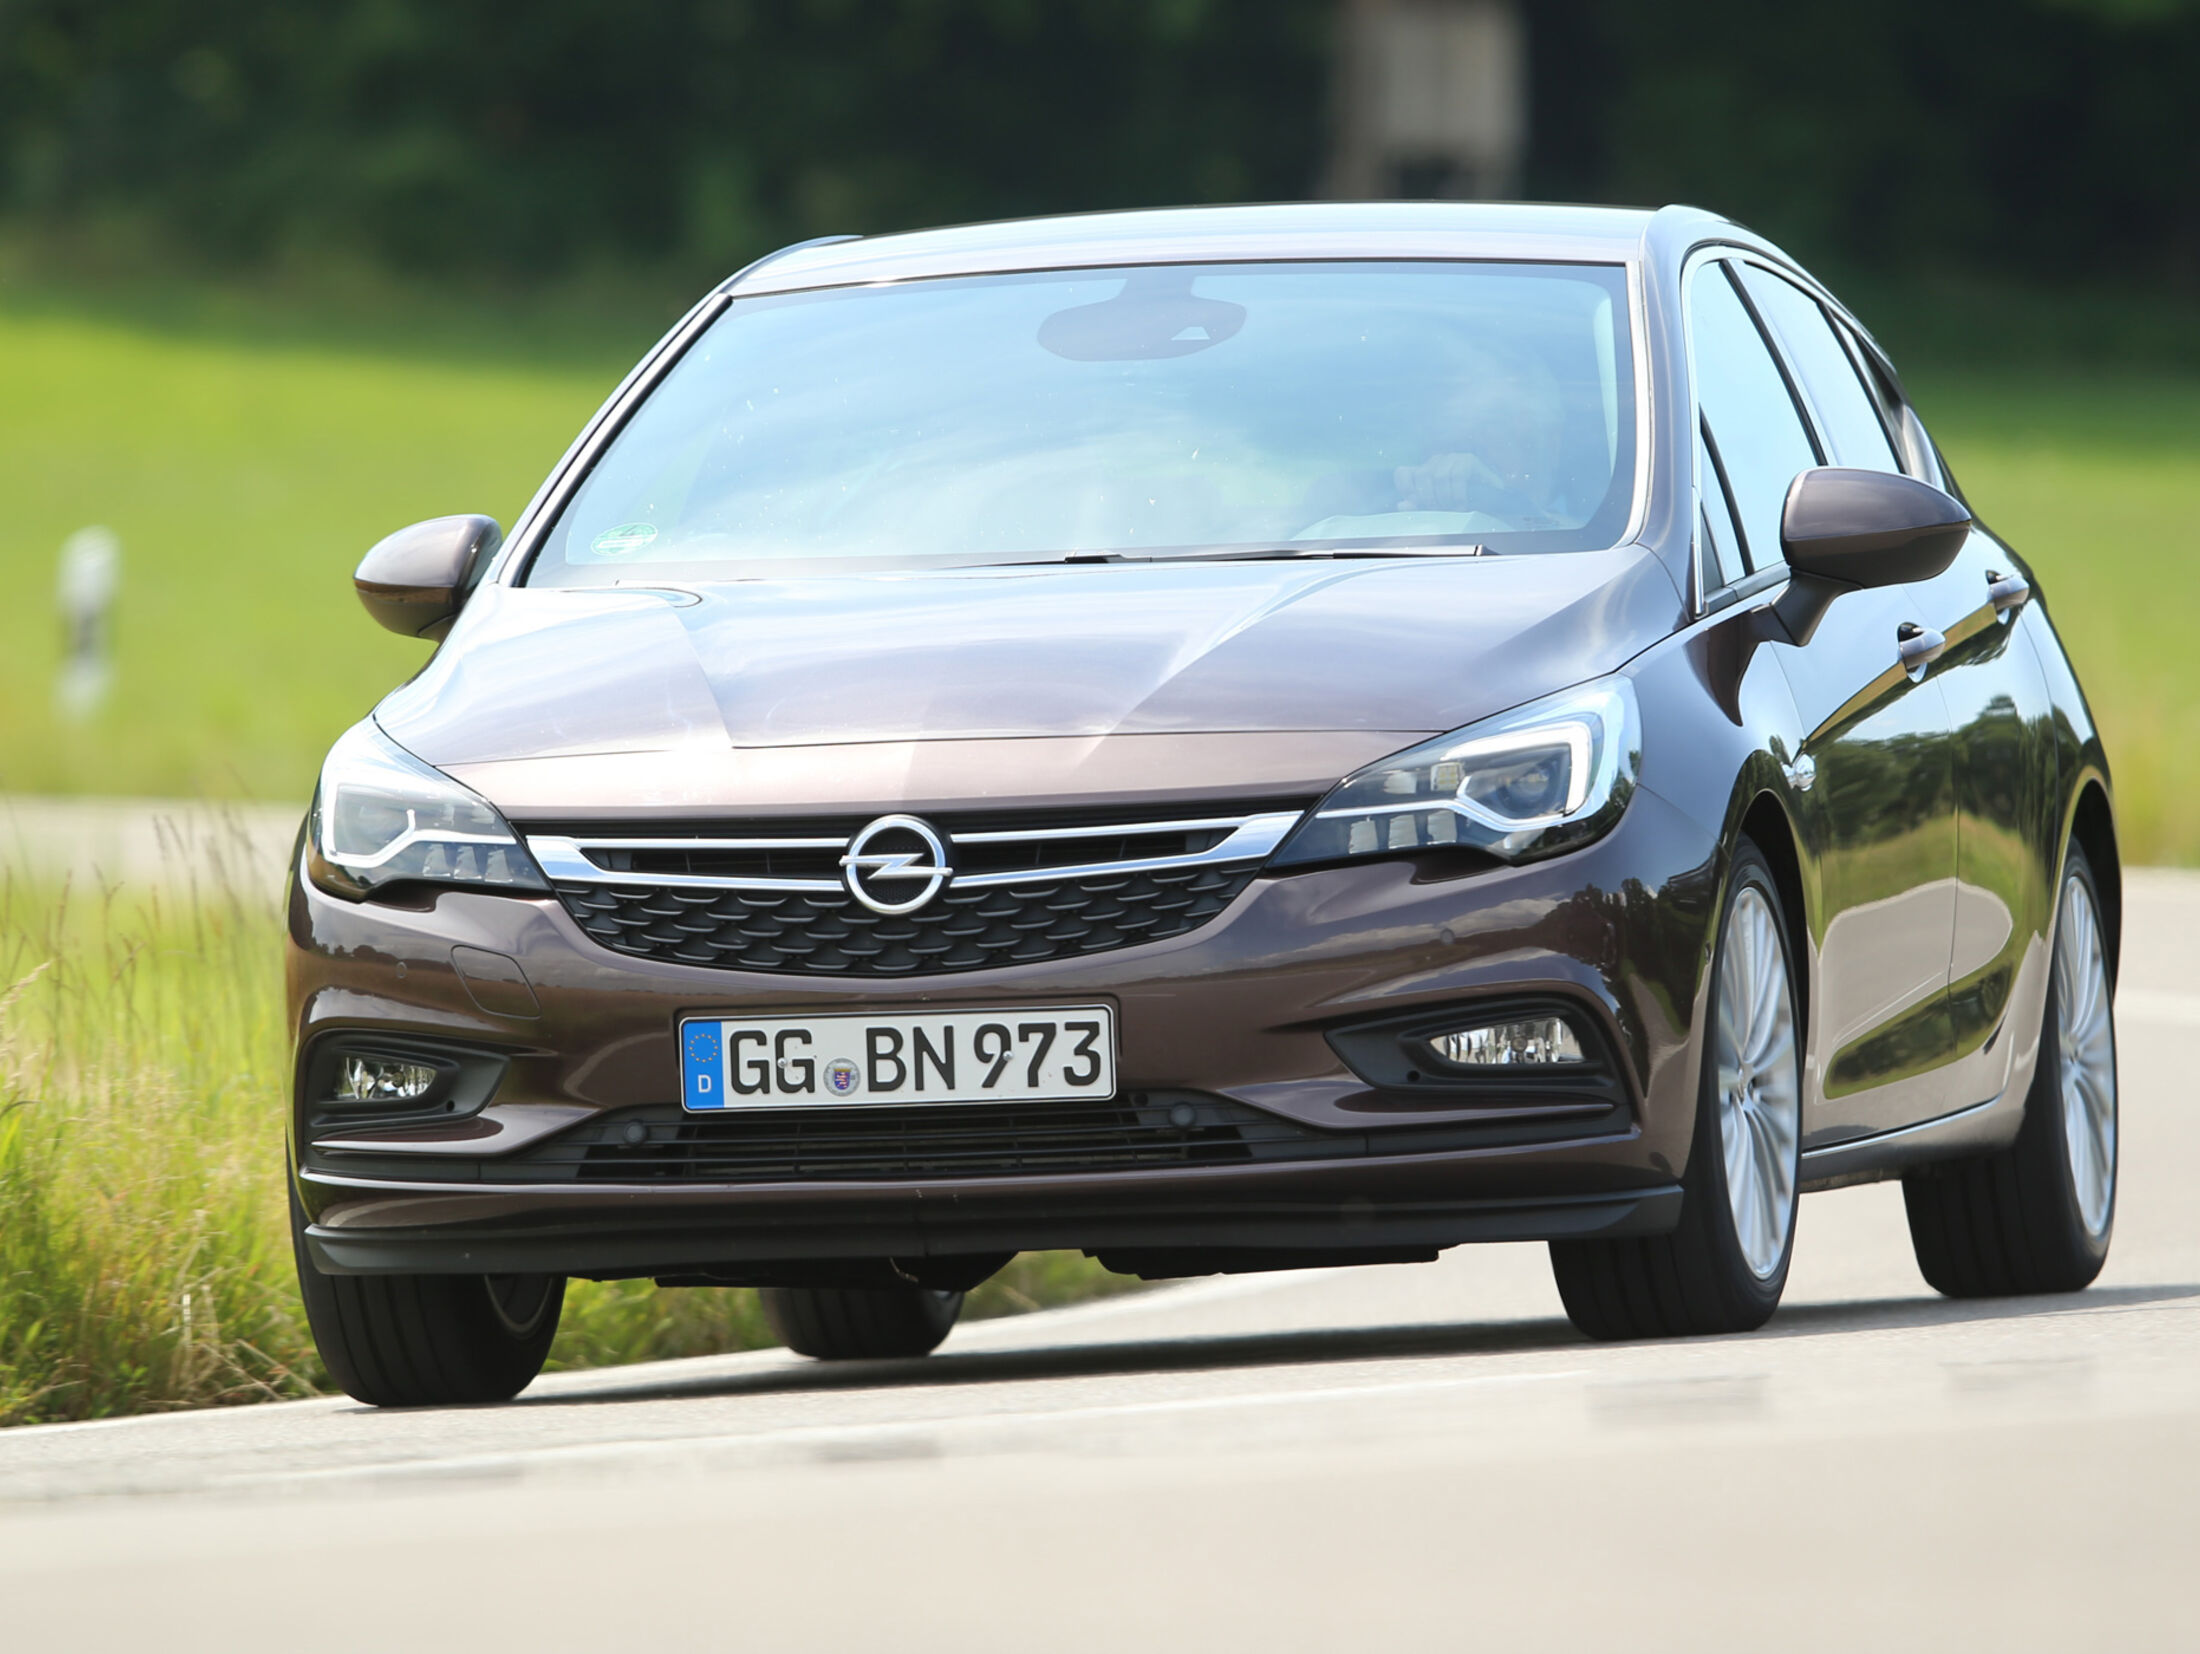 Rückruf für Opel Astra K wegen Problem mit Beifahrer-Airbag